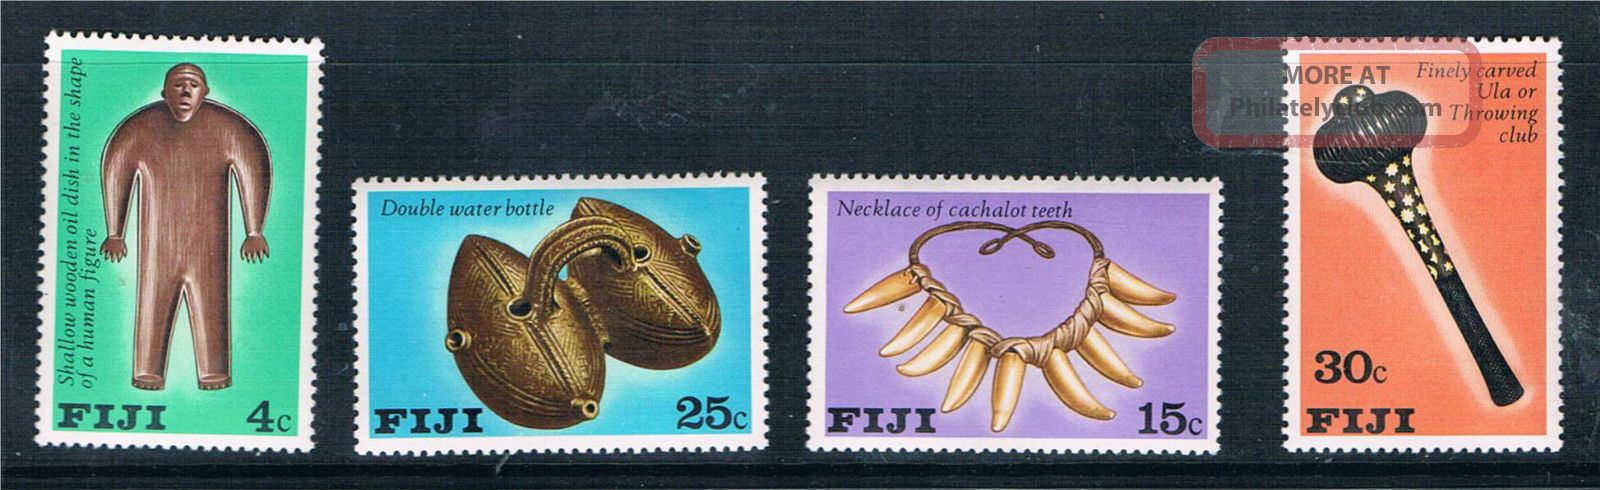 Fiji 1978 Fijian Artifacts Sg 556 - 9